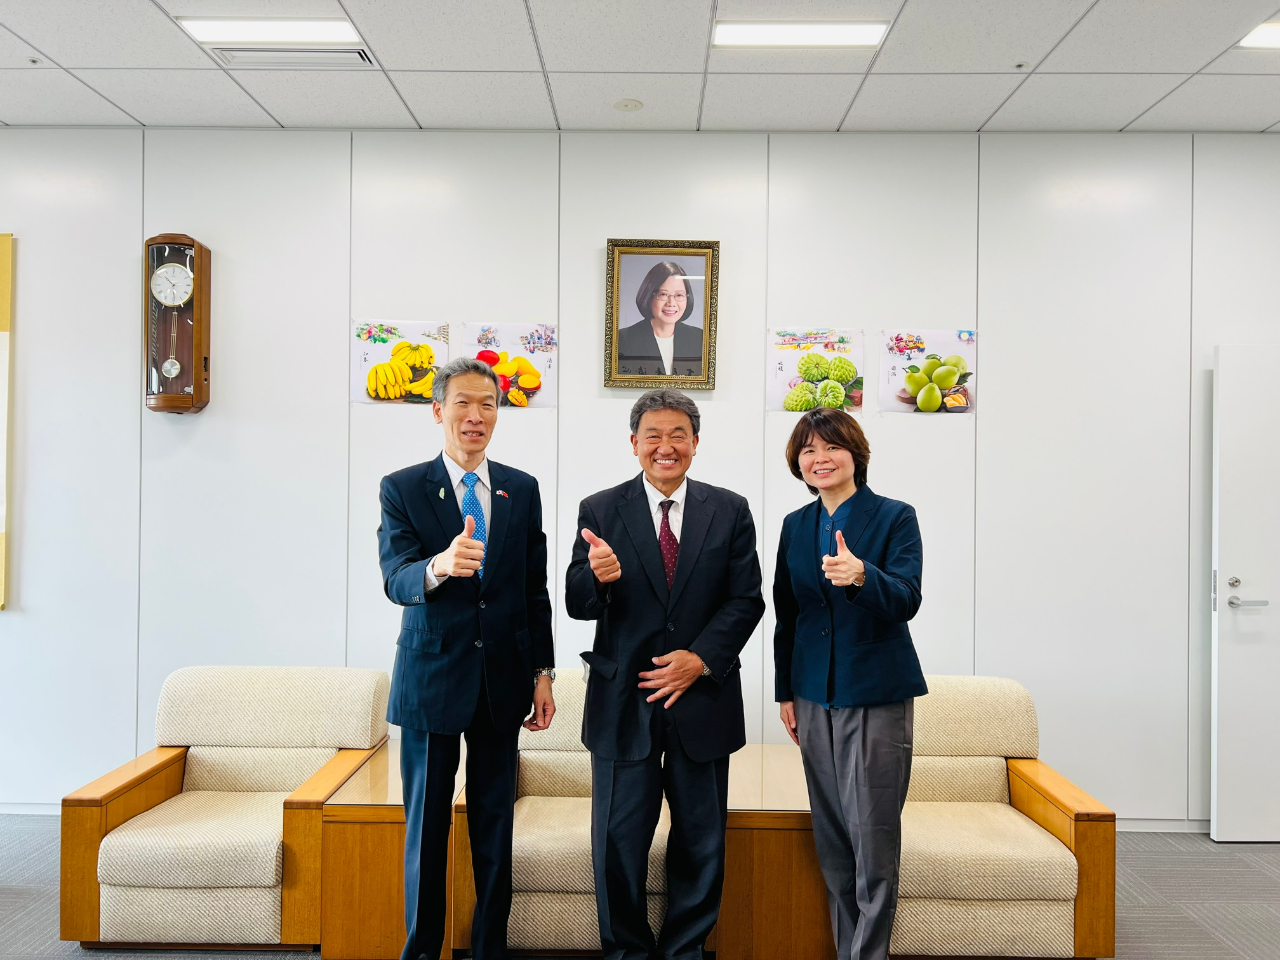 (左至右)駐大阪辦事處向明德處長、日華青少年交流協會相澤邦彥專務理事、林育柔教育秘書